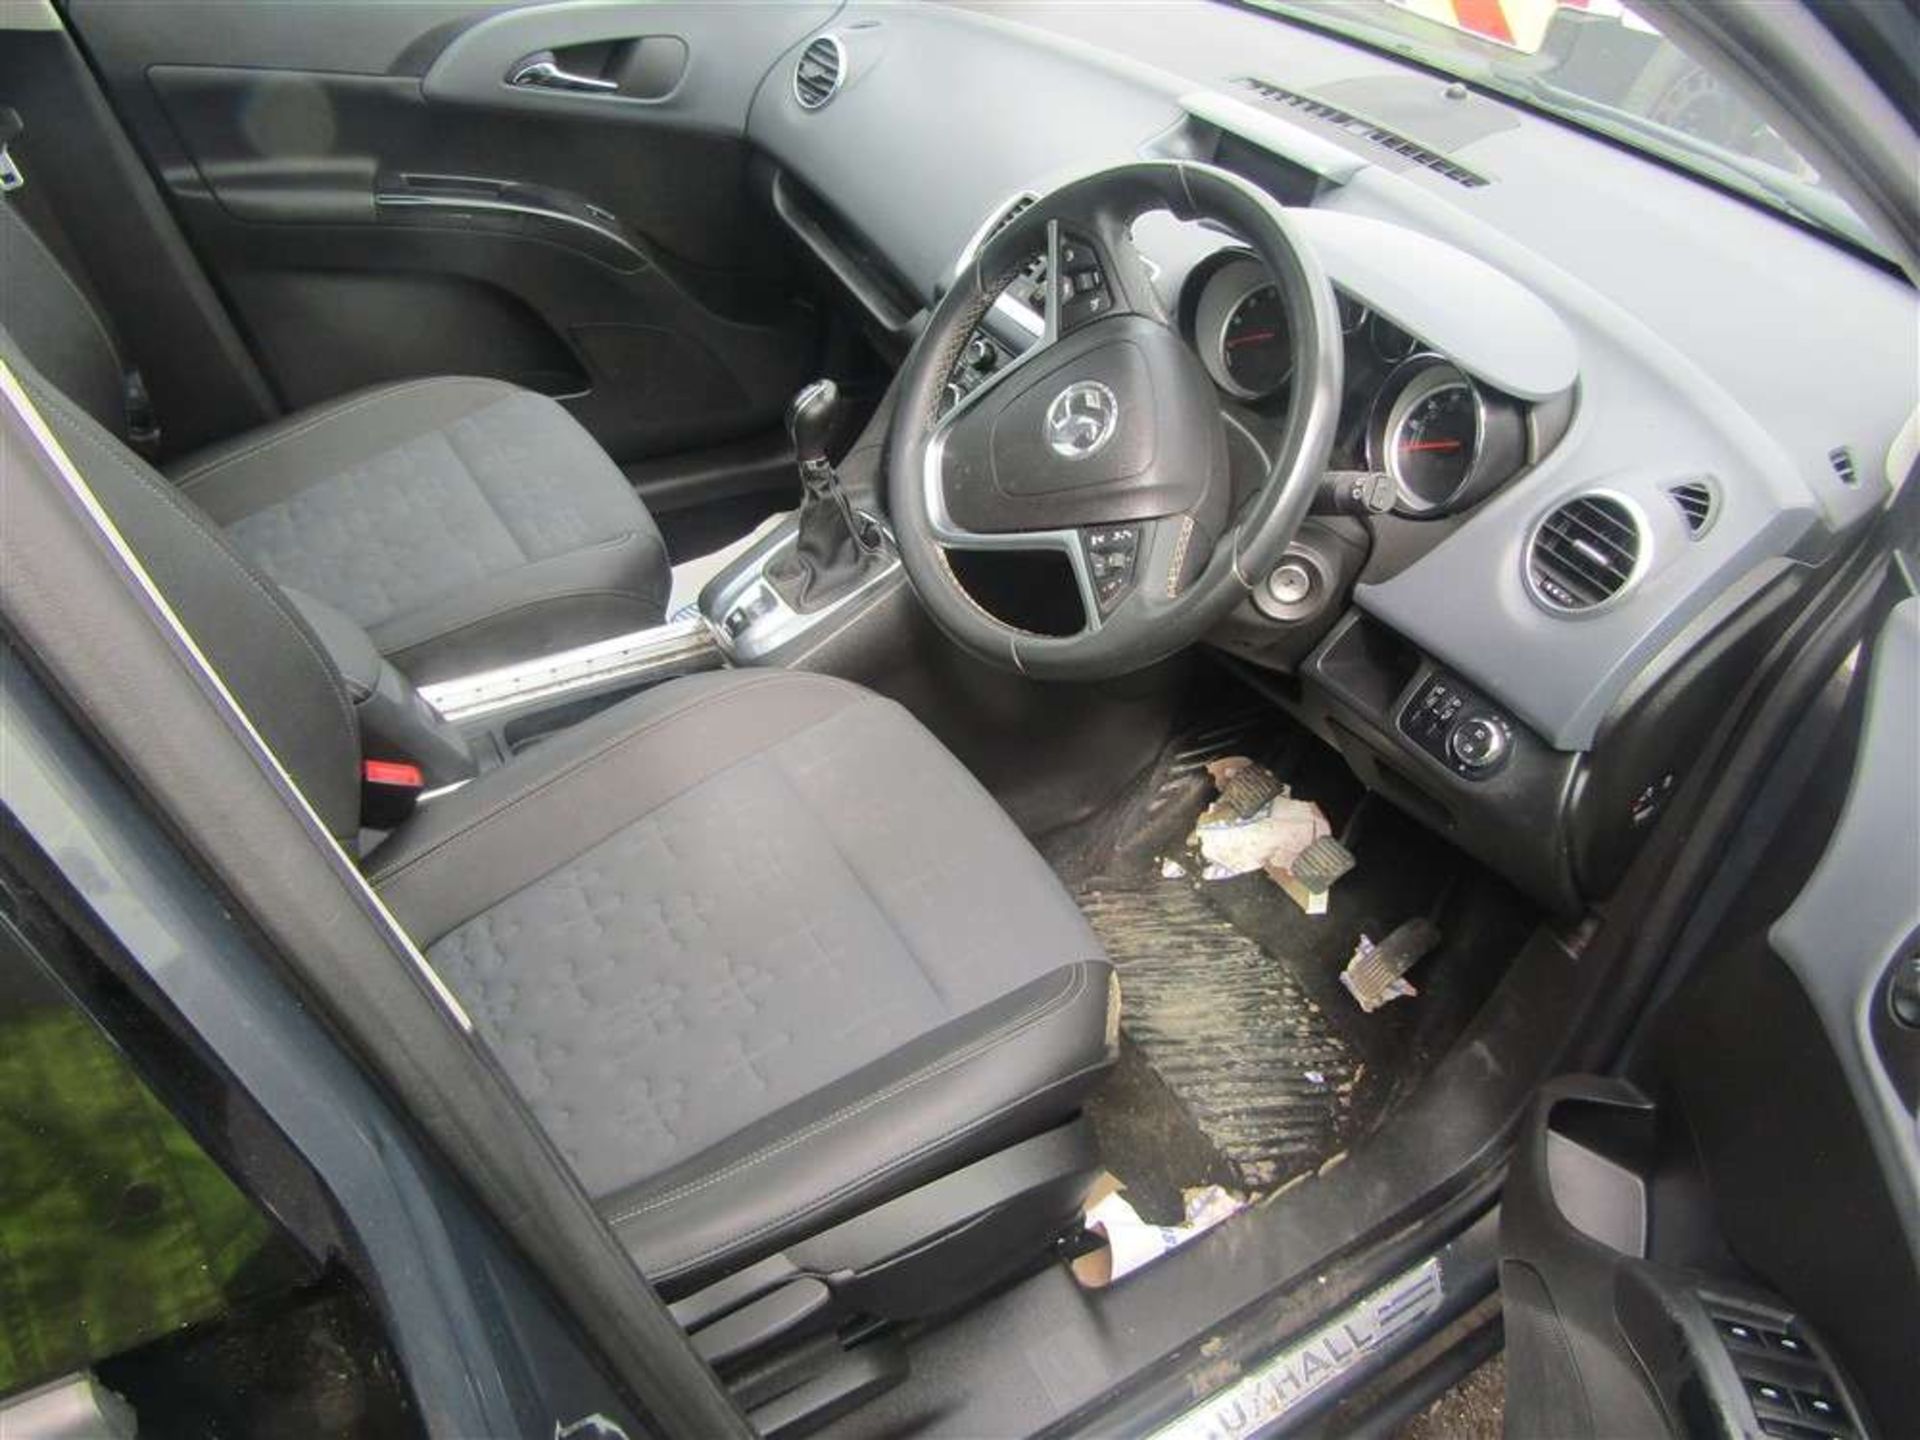 2013 62 reg Vauxhall Meriva SE Turbo - Image 5 of 6